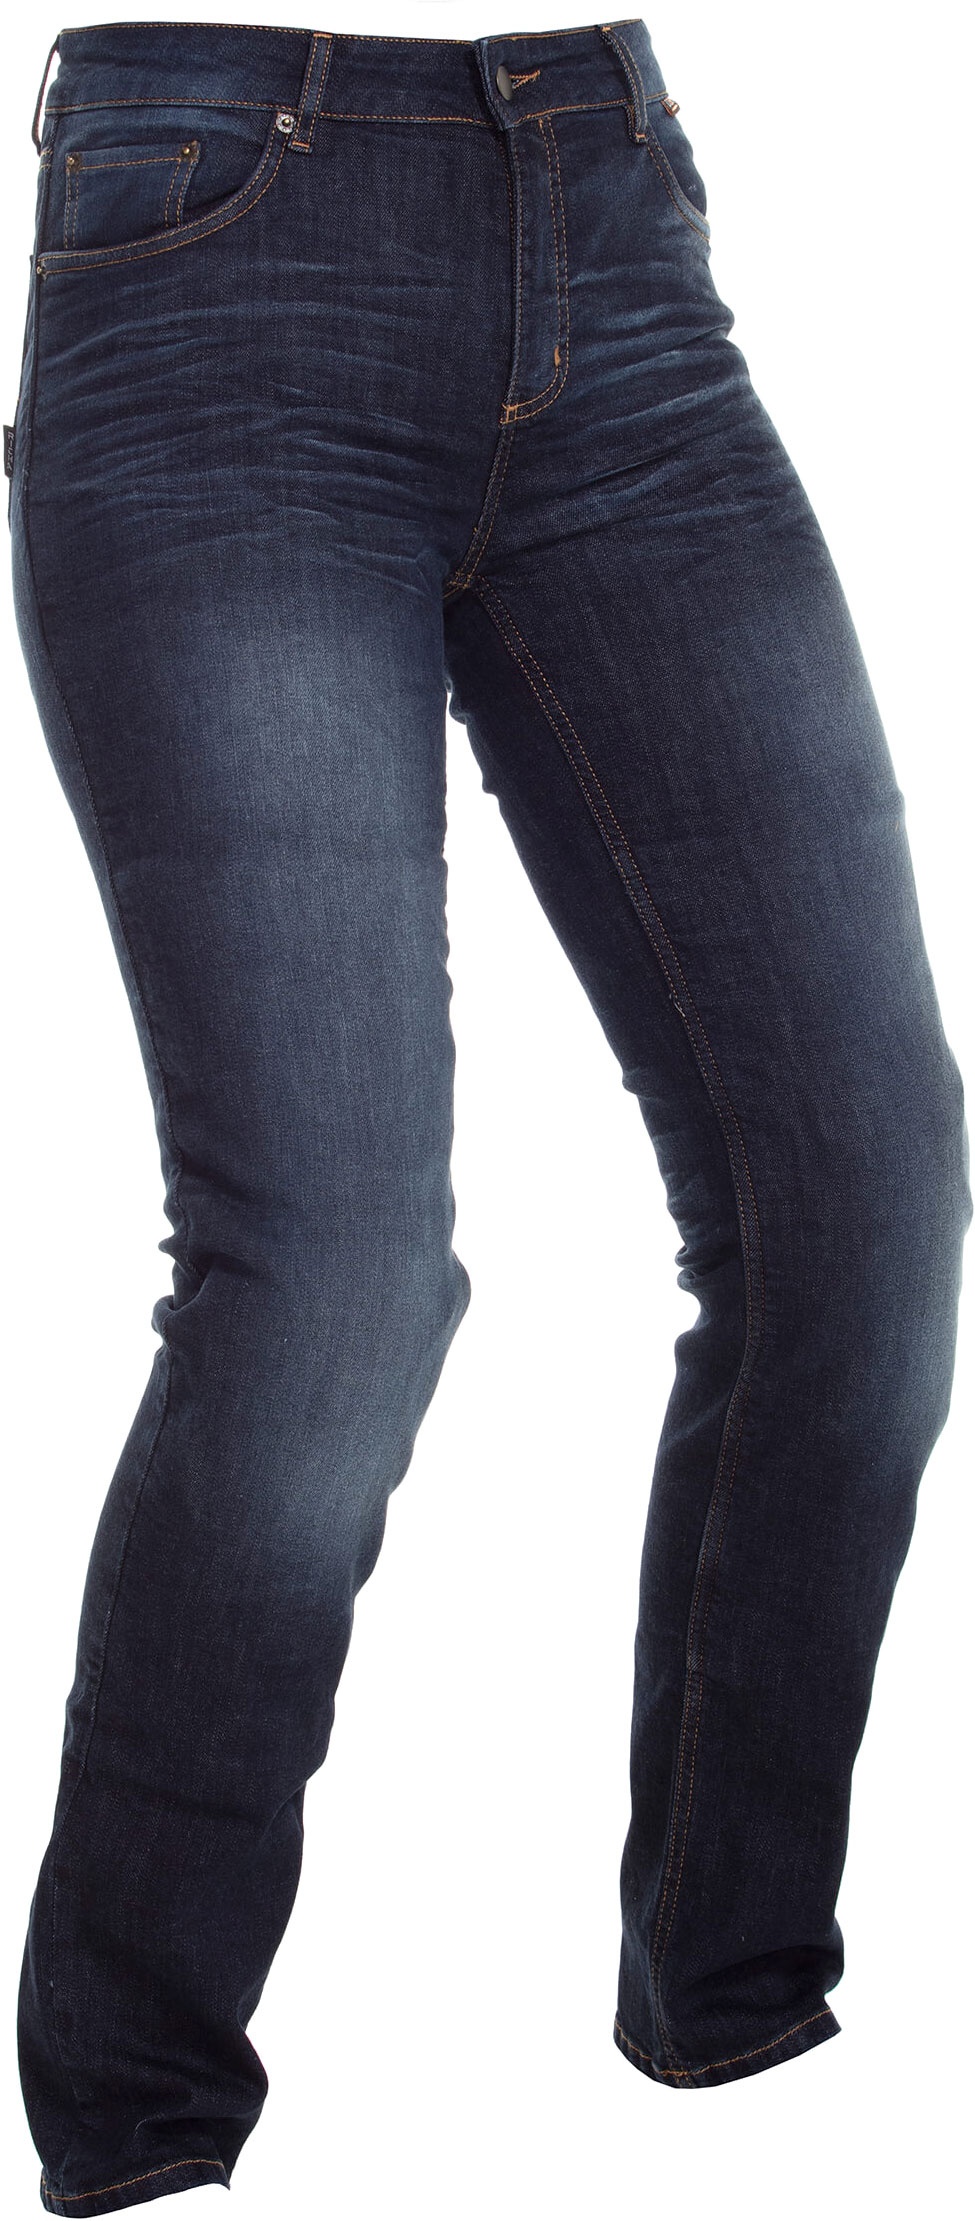 Richa Katie, jeans femmes - Bleu Foncé - 32